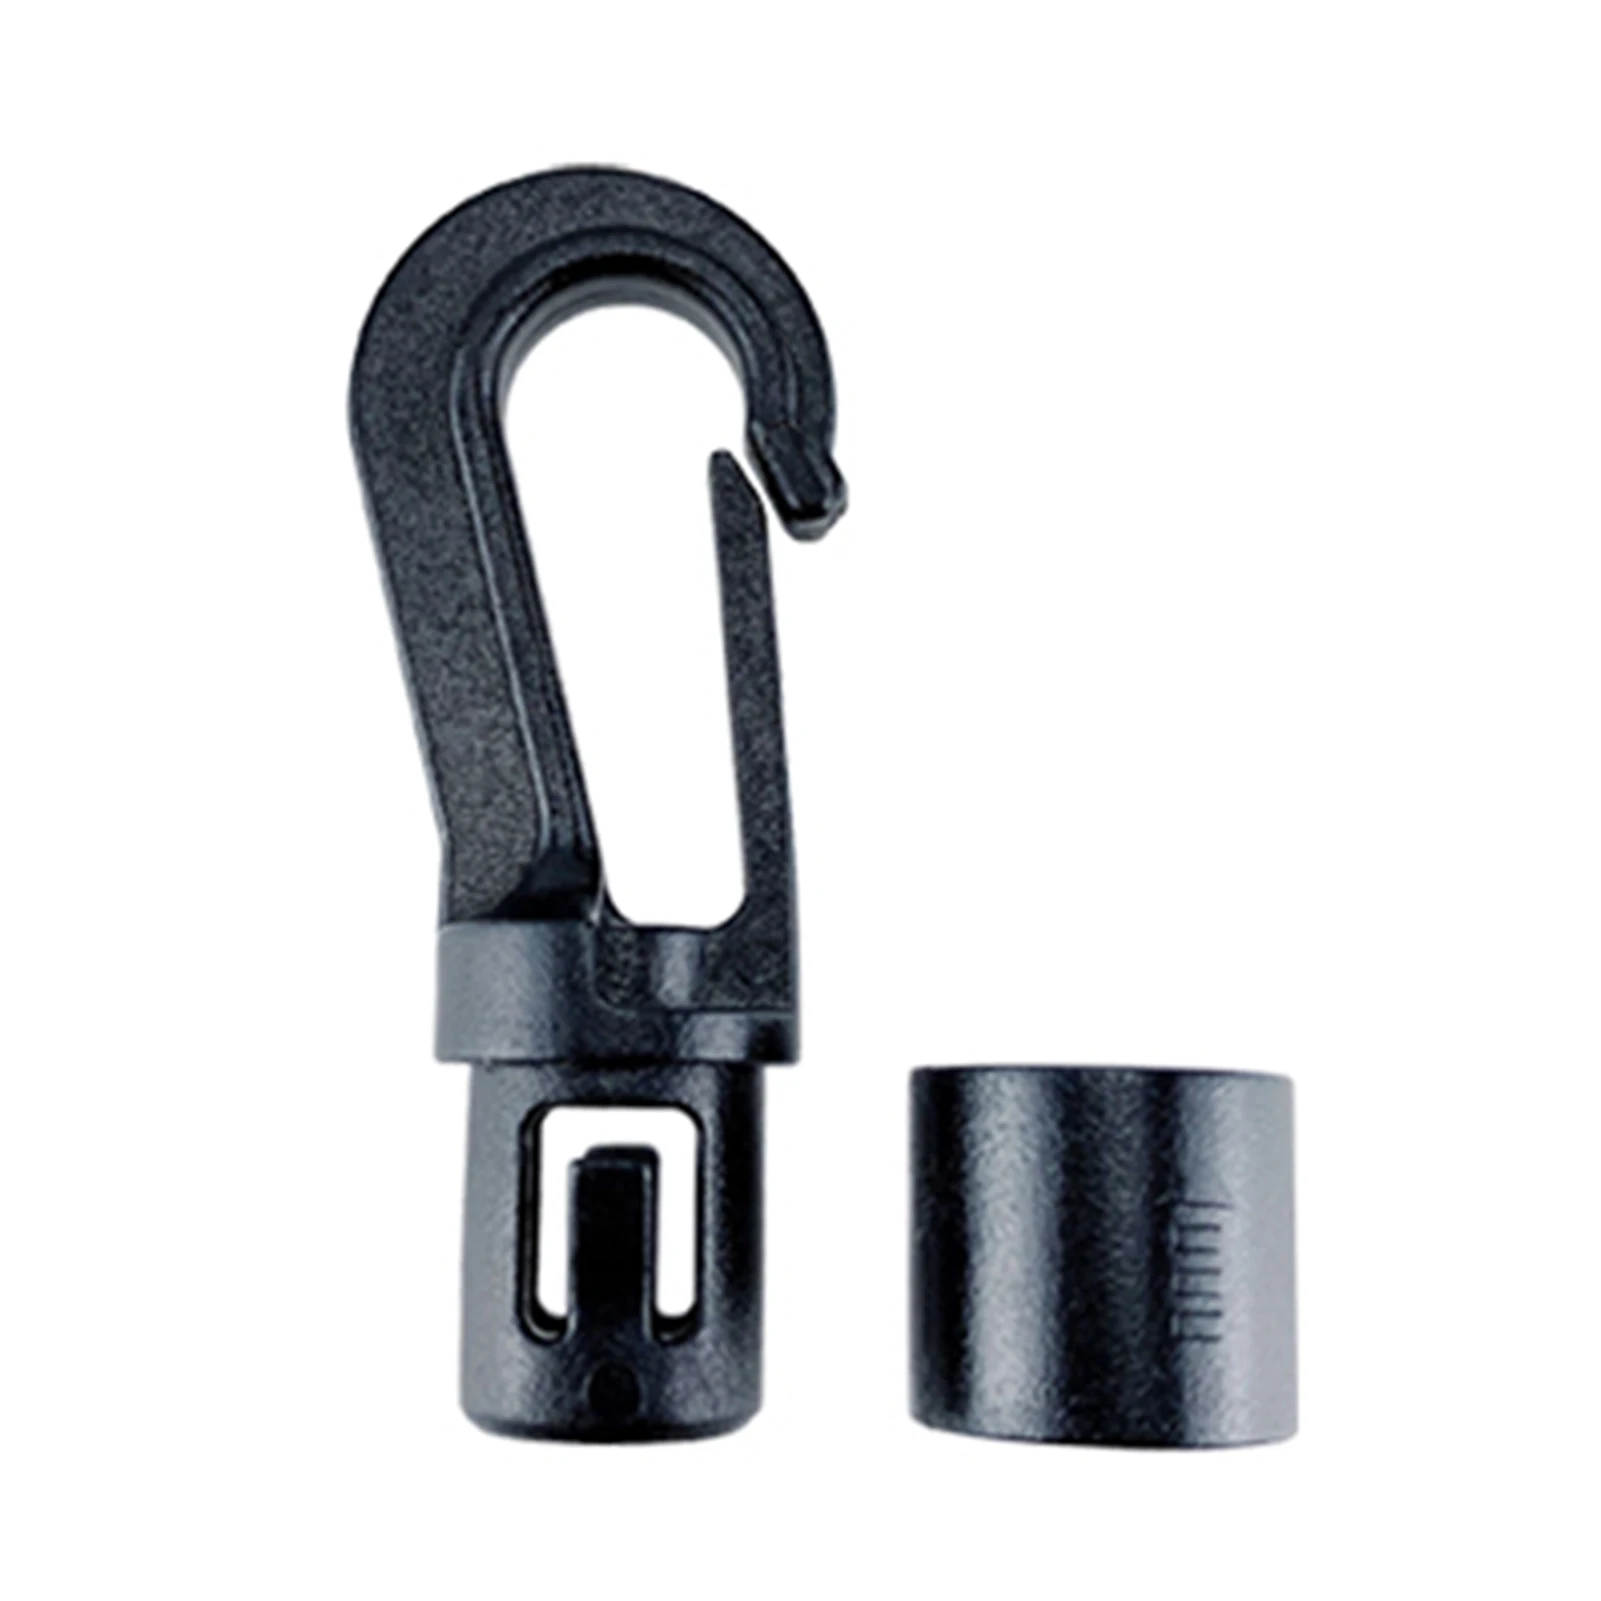 

Plastics Snap Hook Plastics Snap Hook Buckle Bungee Shock Tie Cord Ends Lock Elastic Rope Hook Accessories